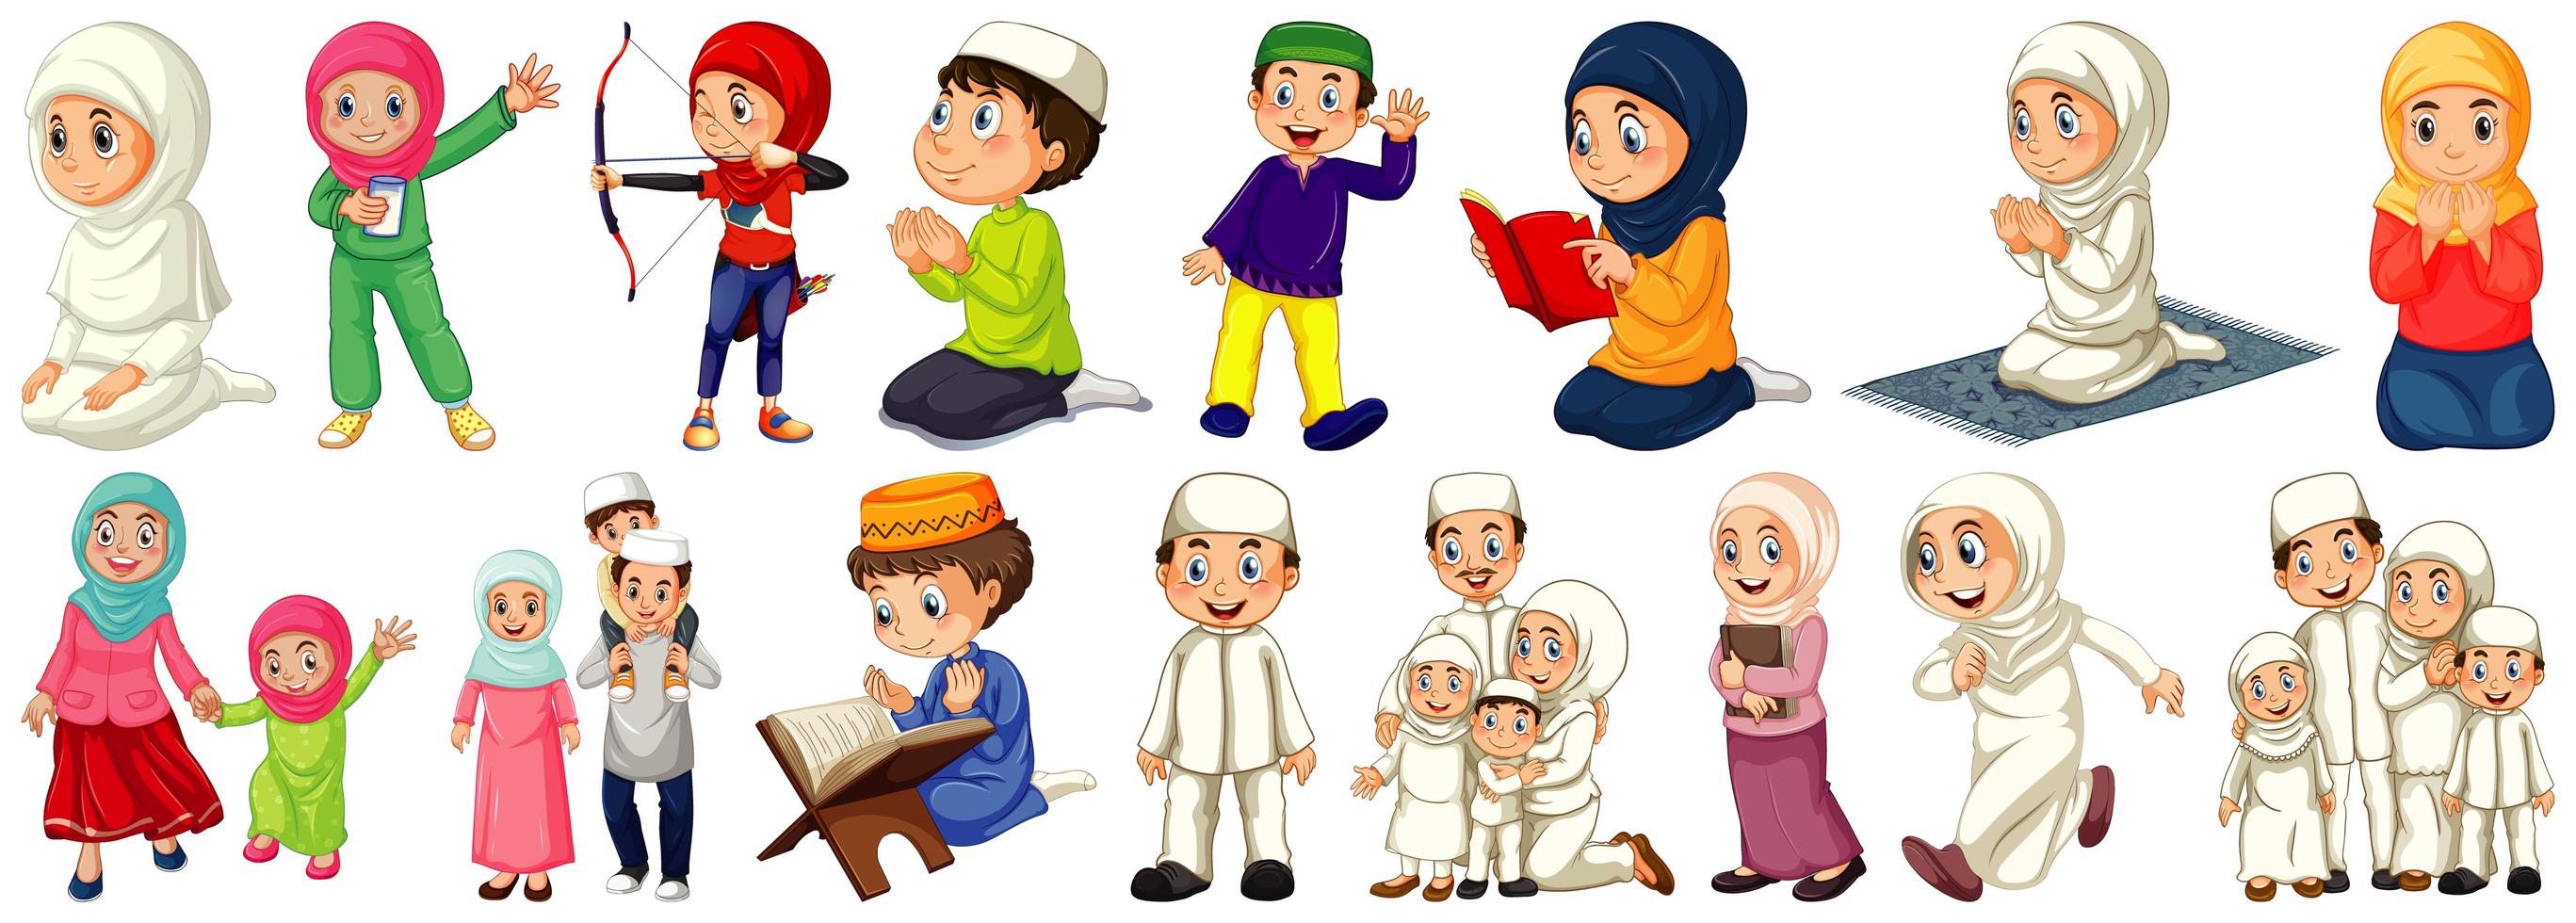 uppsättning av olika muslimska seriefigurer vektor